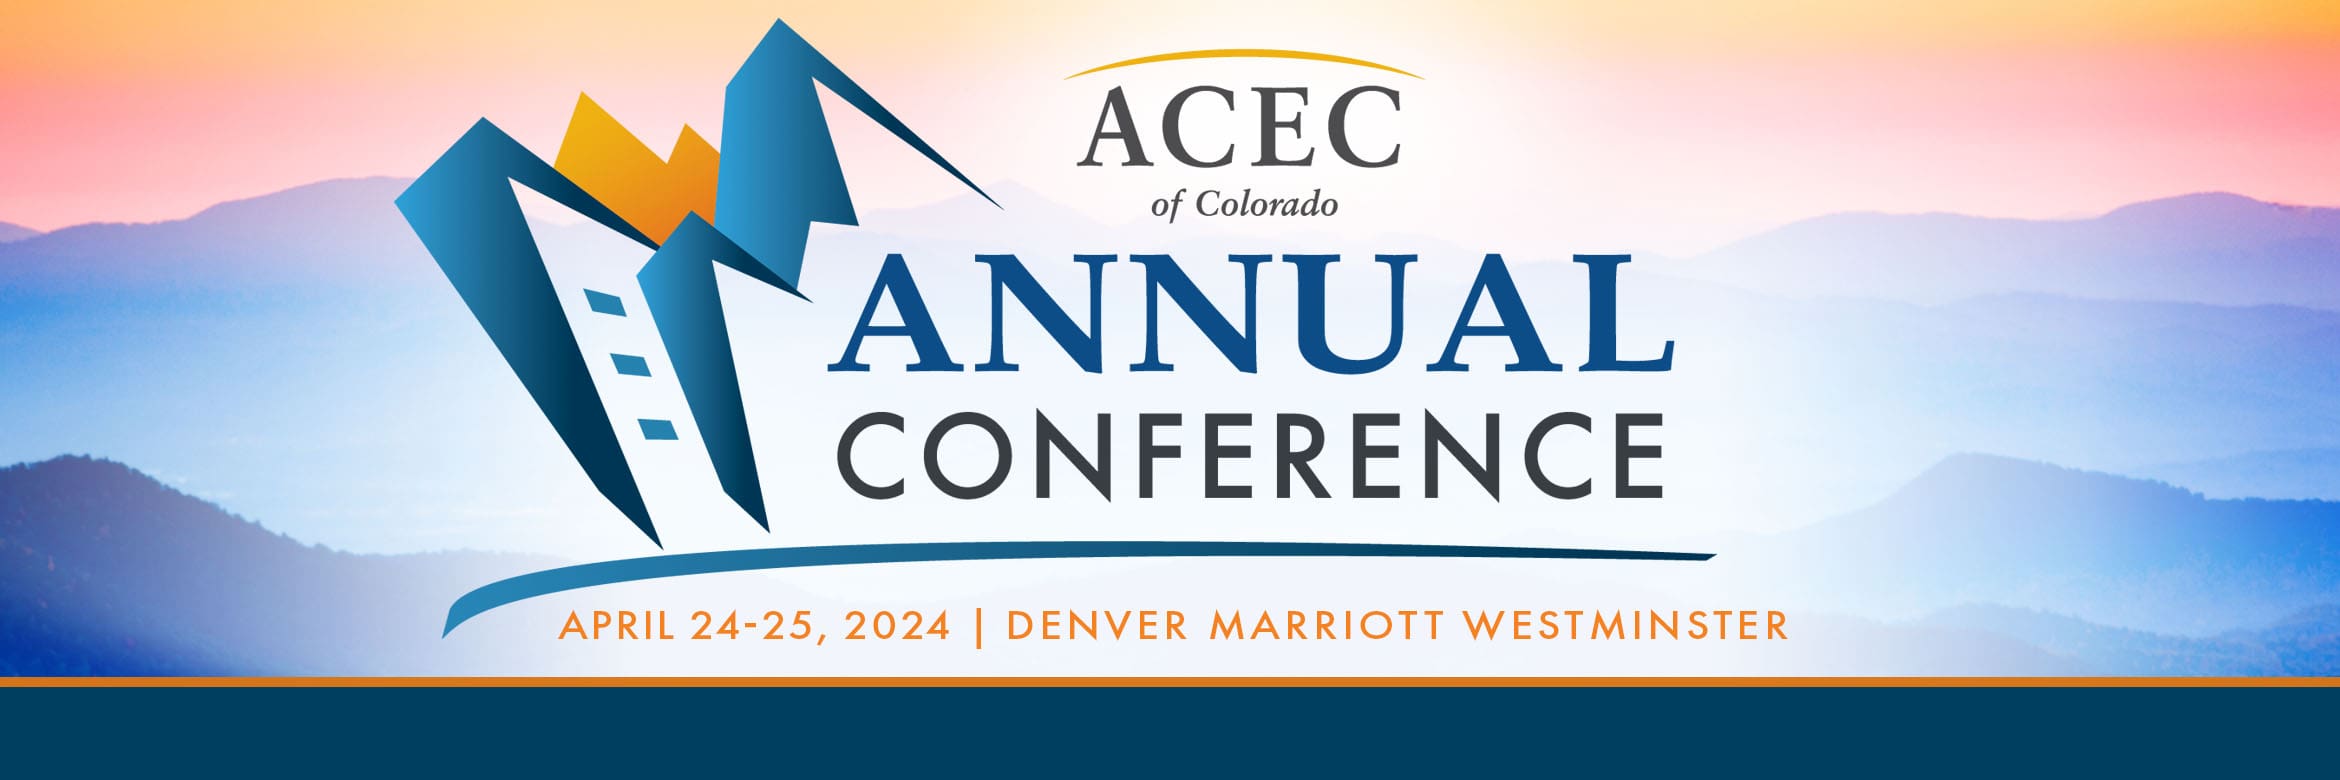 Annual Conference ACEC Colorado